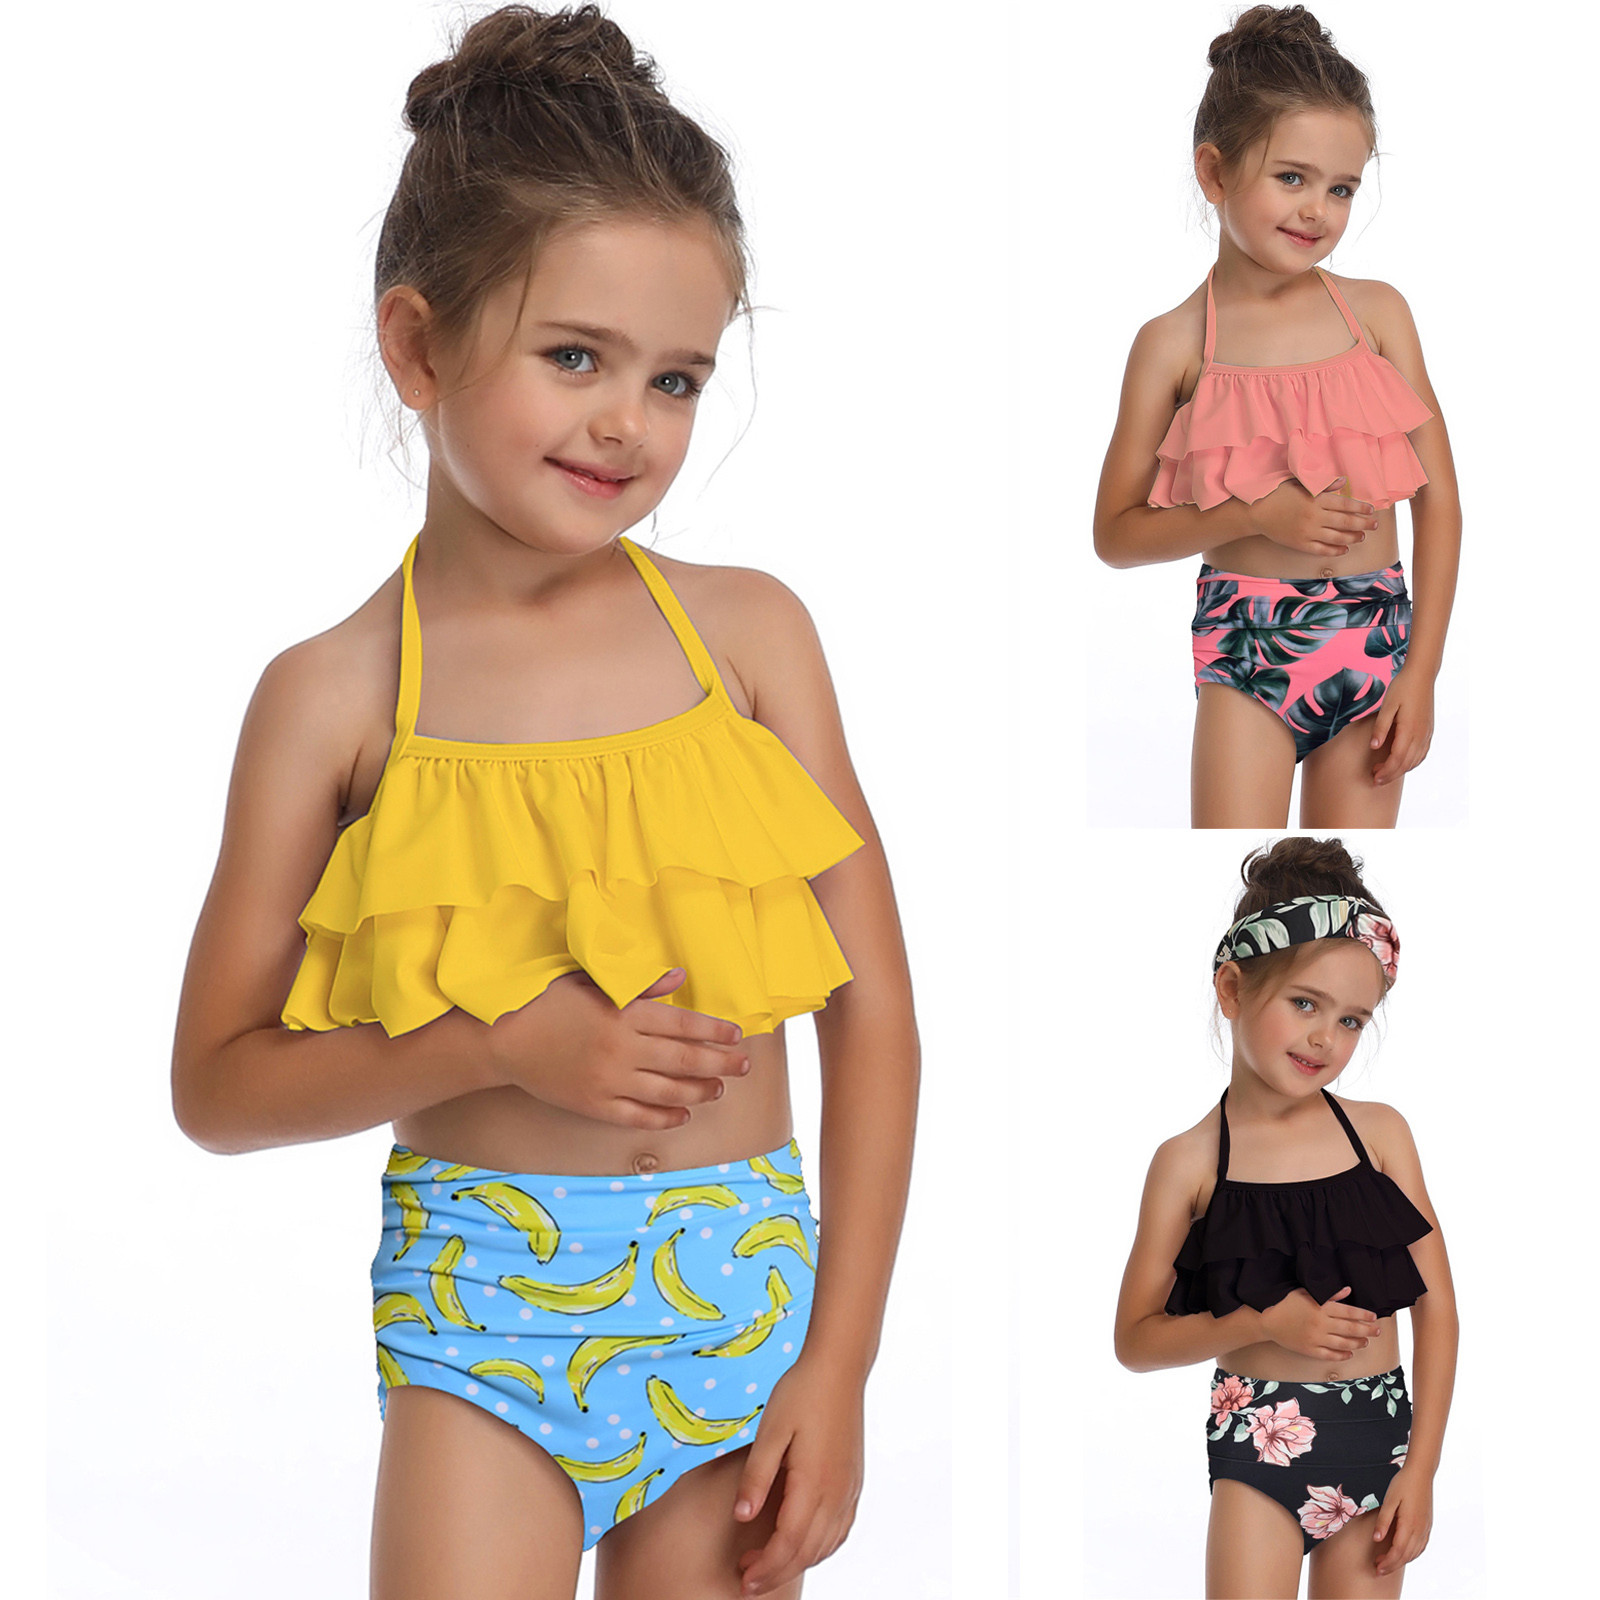 Skirts for Girls of Age 13 Bikini Wear Ruffles Little Suit 212Y Baby